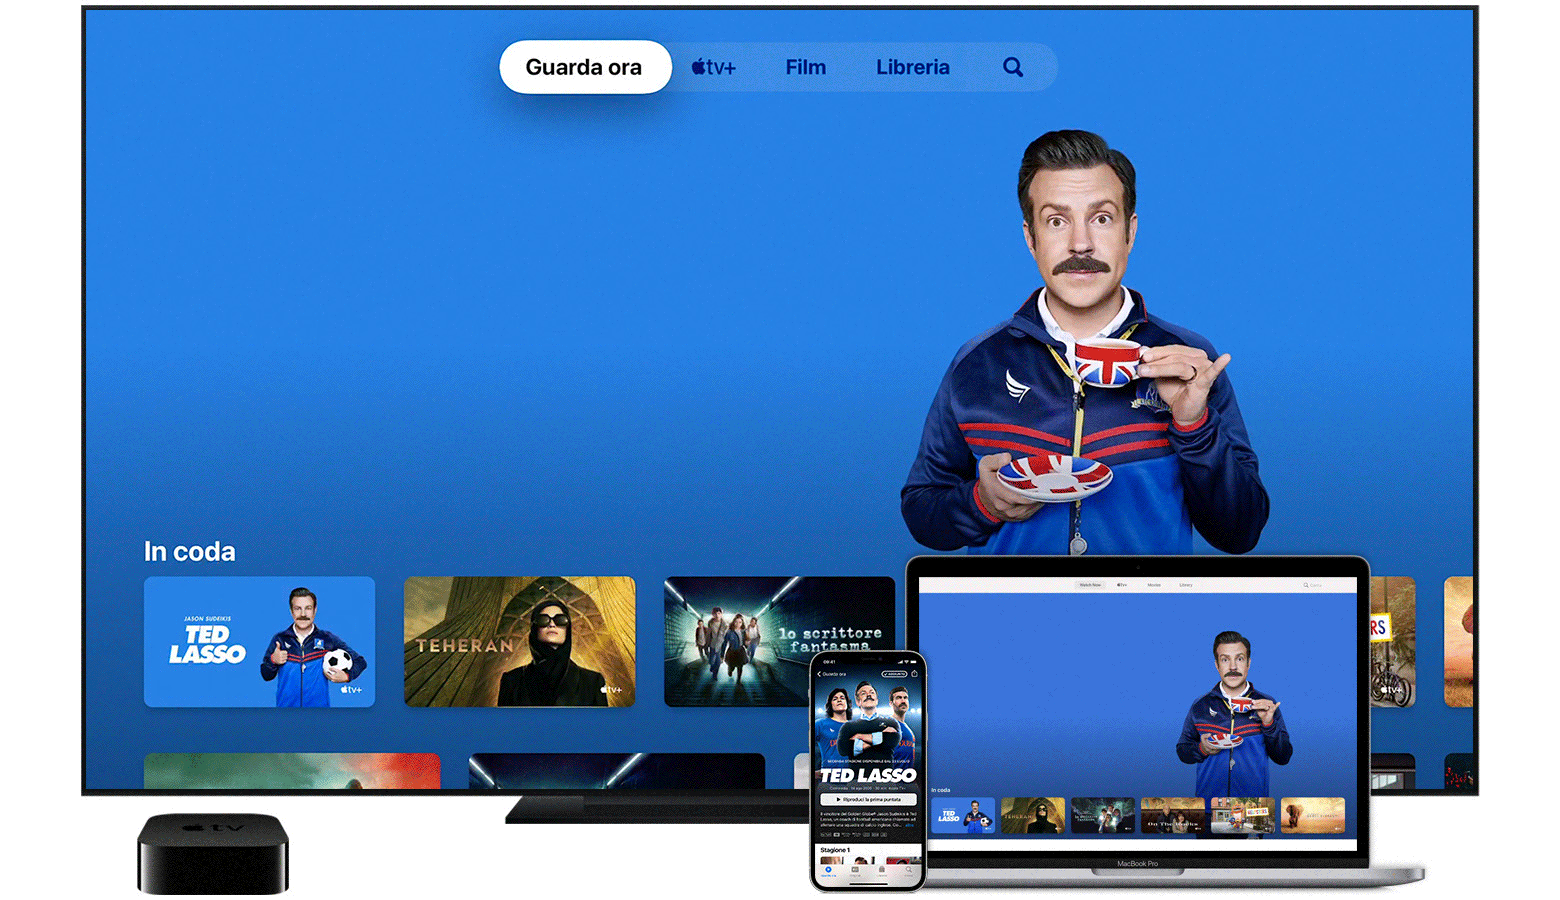 Guardare film, programmi TV e contenuti in diretta con l'app Apple TV -  Supporto Apple (IT)